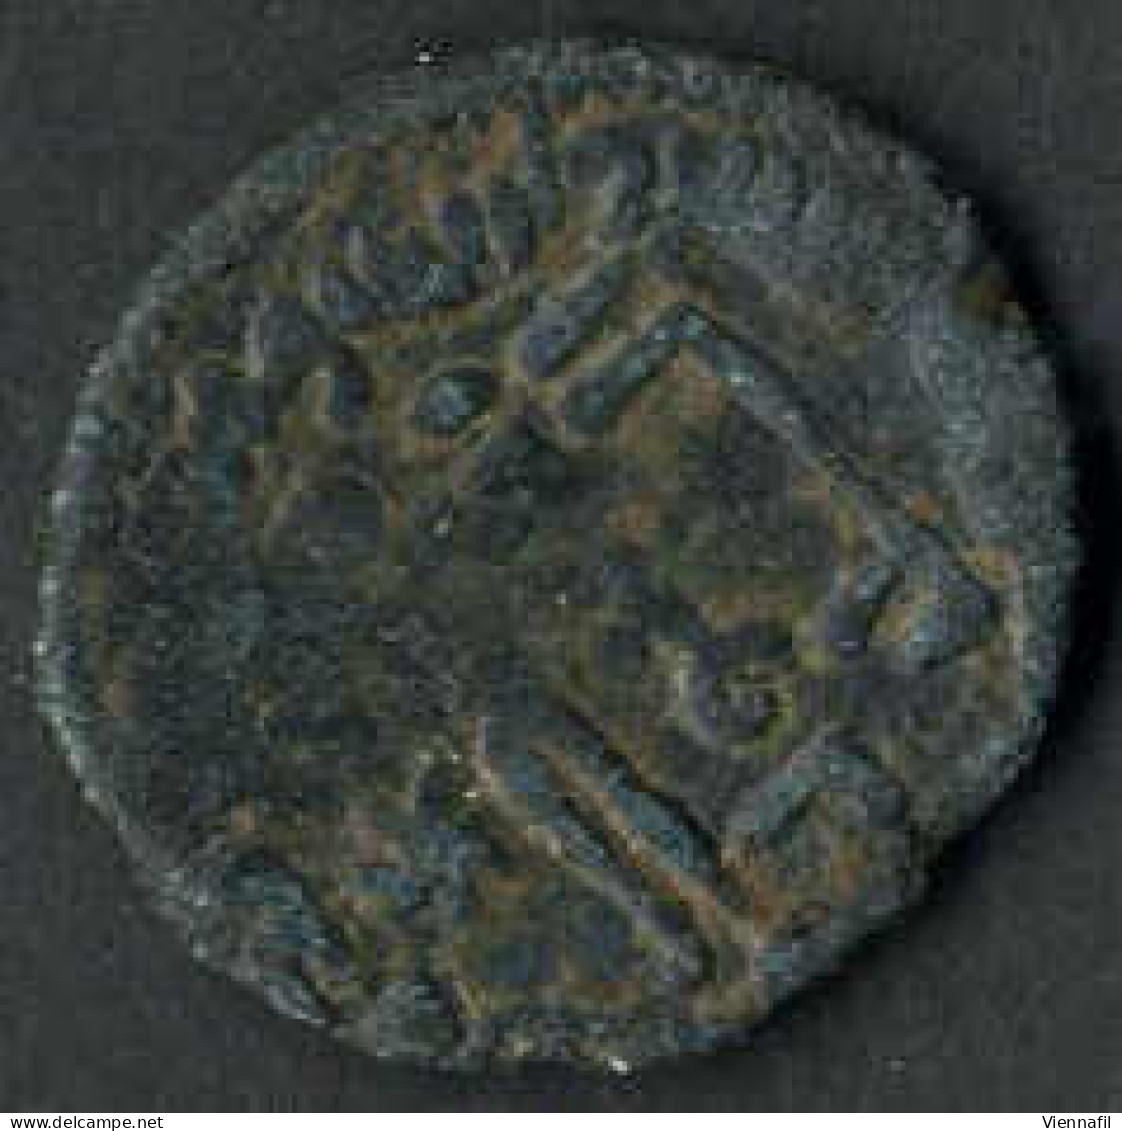 198-290AH 813-910, Fals, Verschiedene Jahre Und Münzstätten, Sehr Gut Bis Sehr Schön, 9 Stück - Islamische Münzen